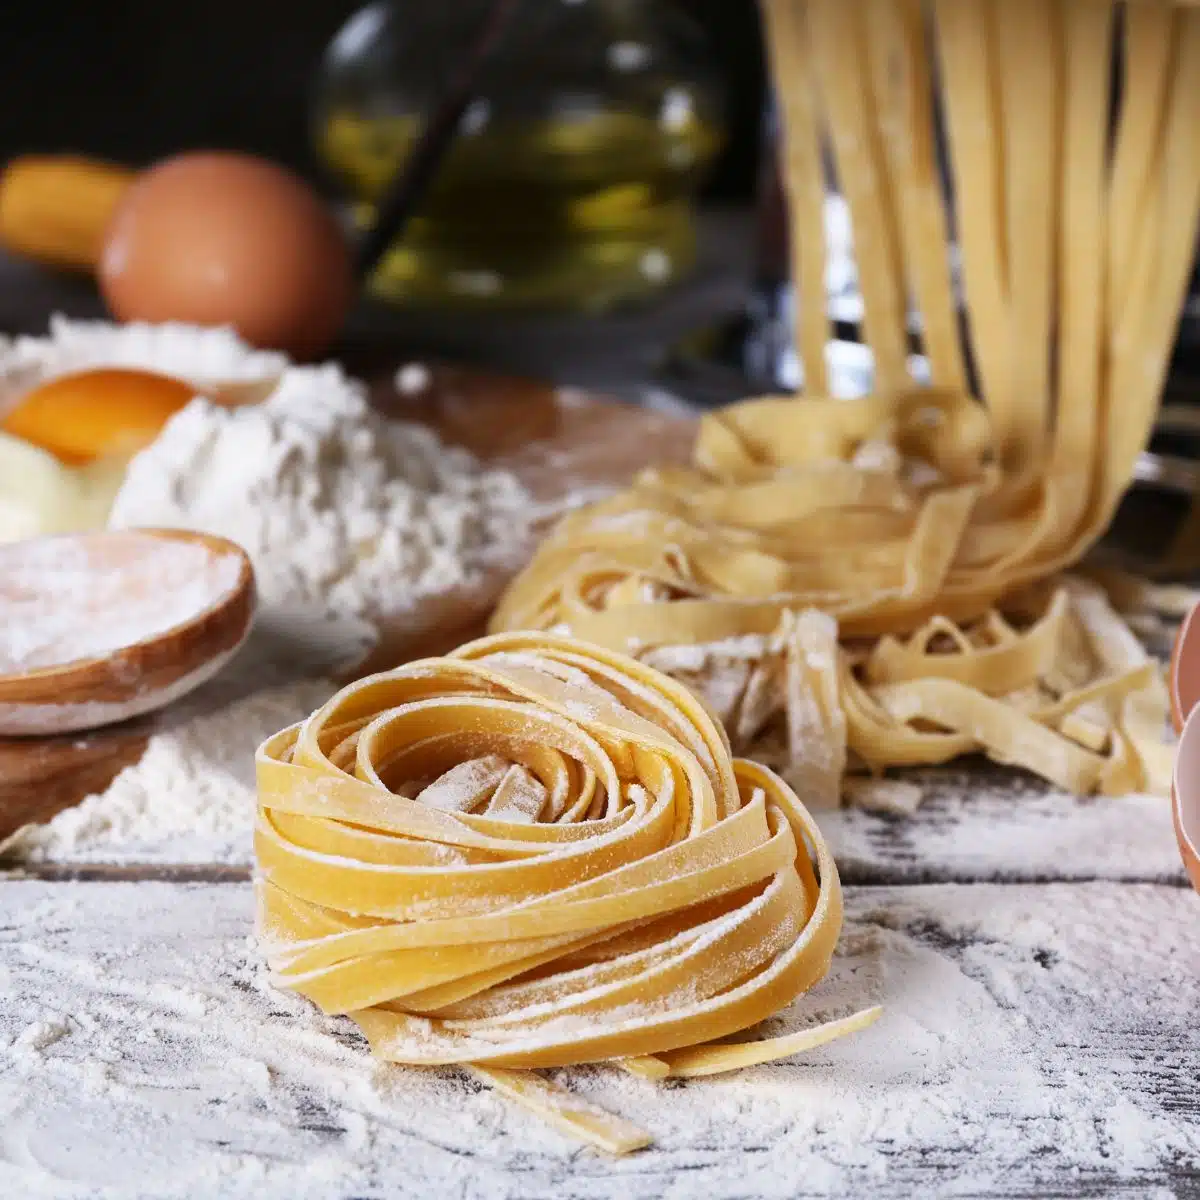 Kvadratna slika domaće tjestenine s priborom za izradu tjestenine.